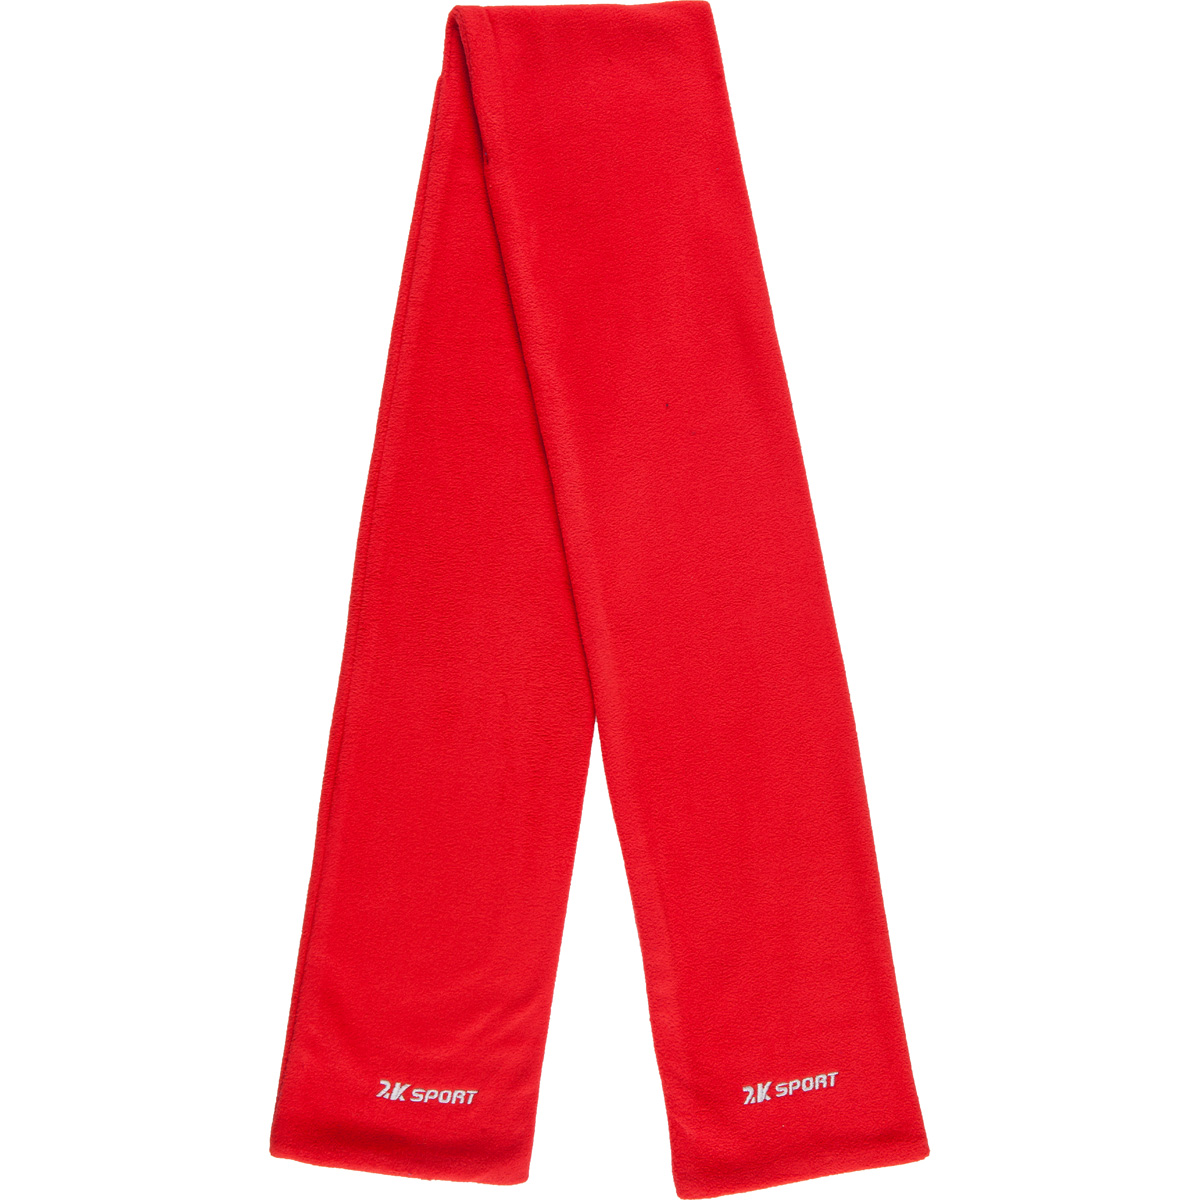 Шарф 2K Sport Classic, цвет: красный. 124035-2. Размер универсальный